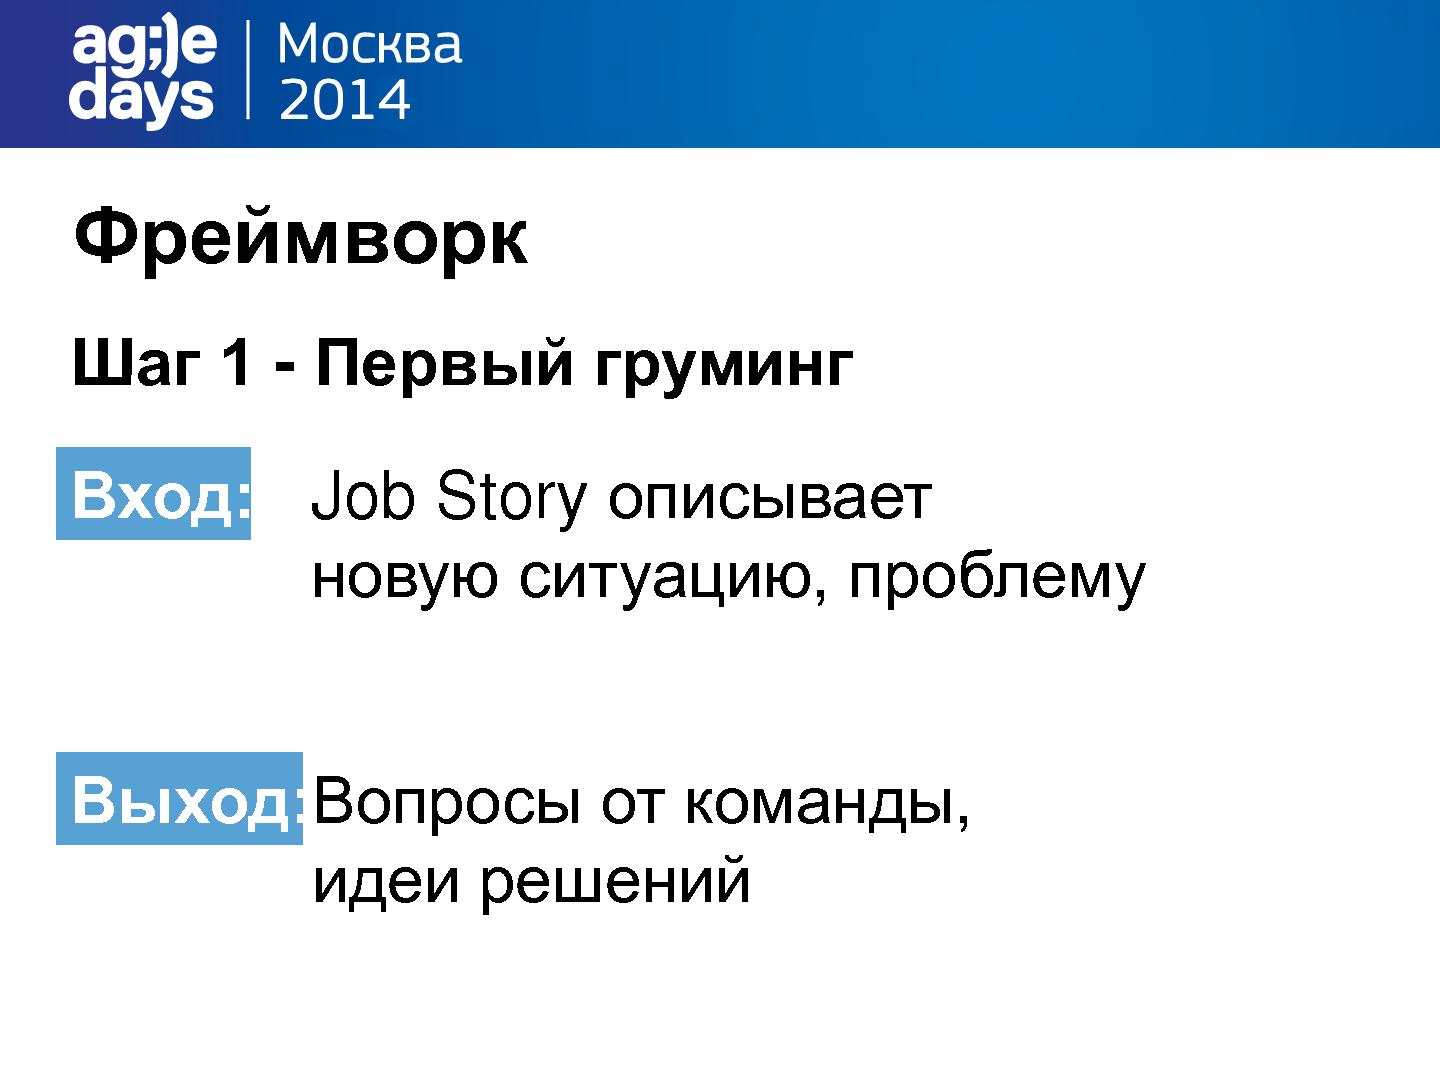 Файл:User story устарели! Время для Job story! (Виталий Король, AgileDays-2014).pdf